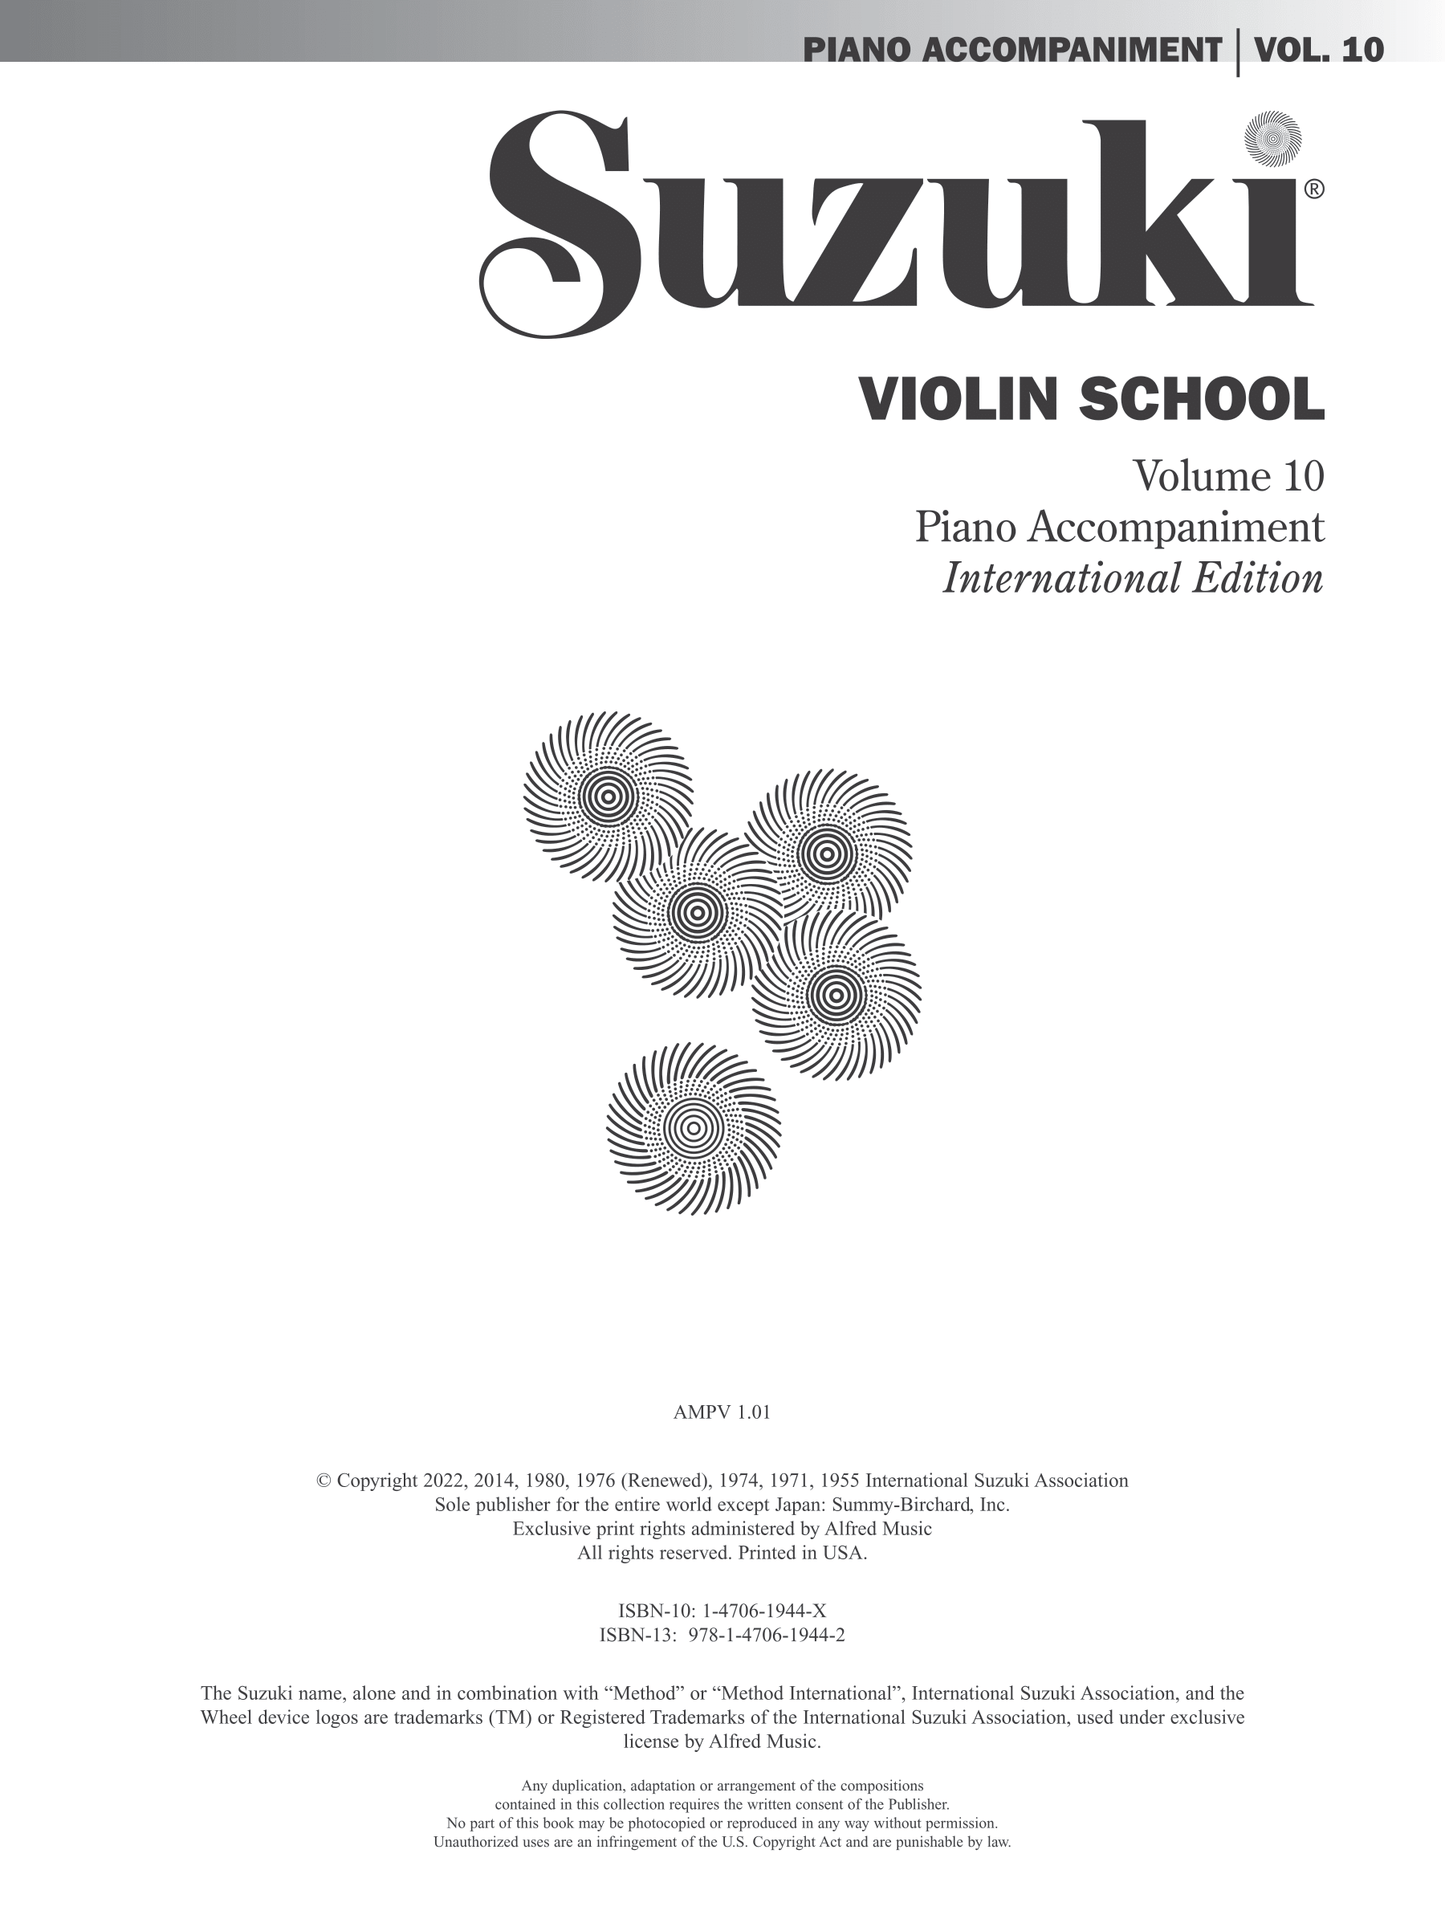 Suzuki Violin School - Volume 10 Piano Accompaniment Book